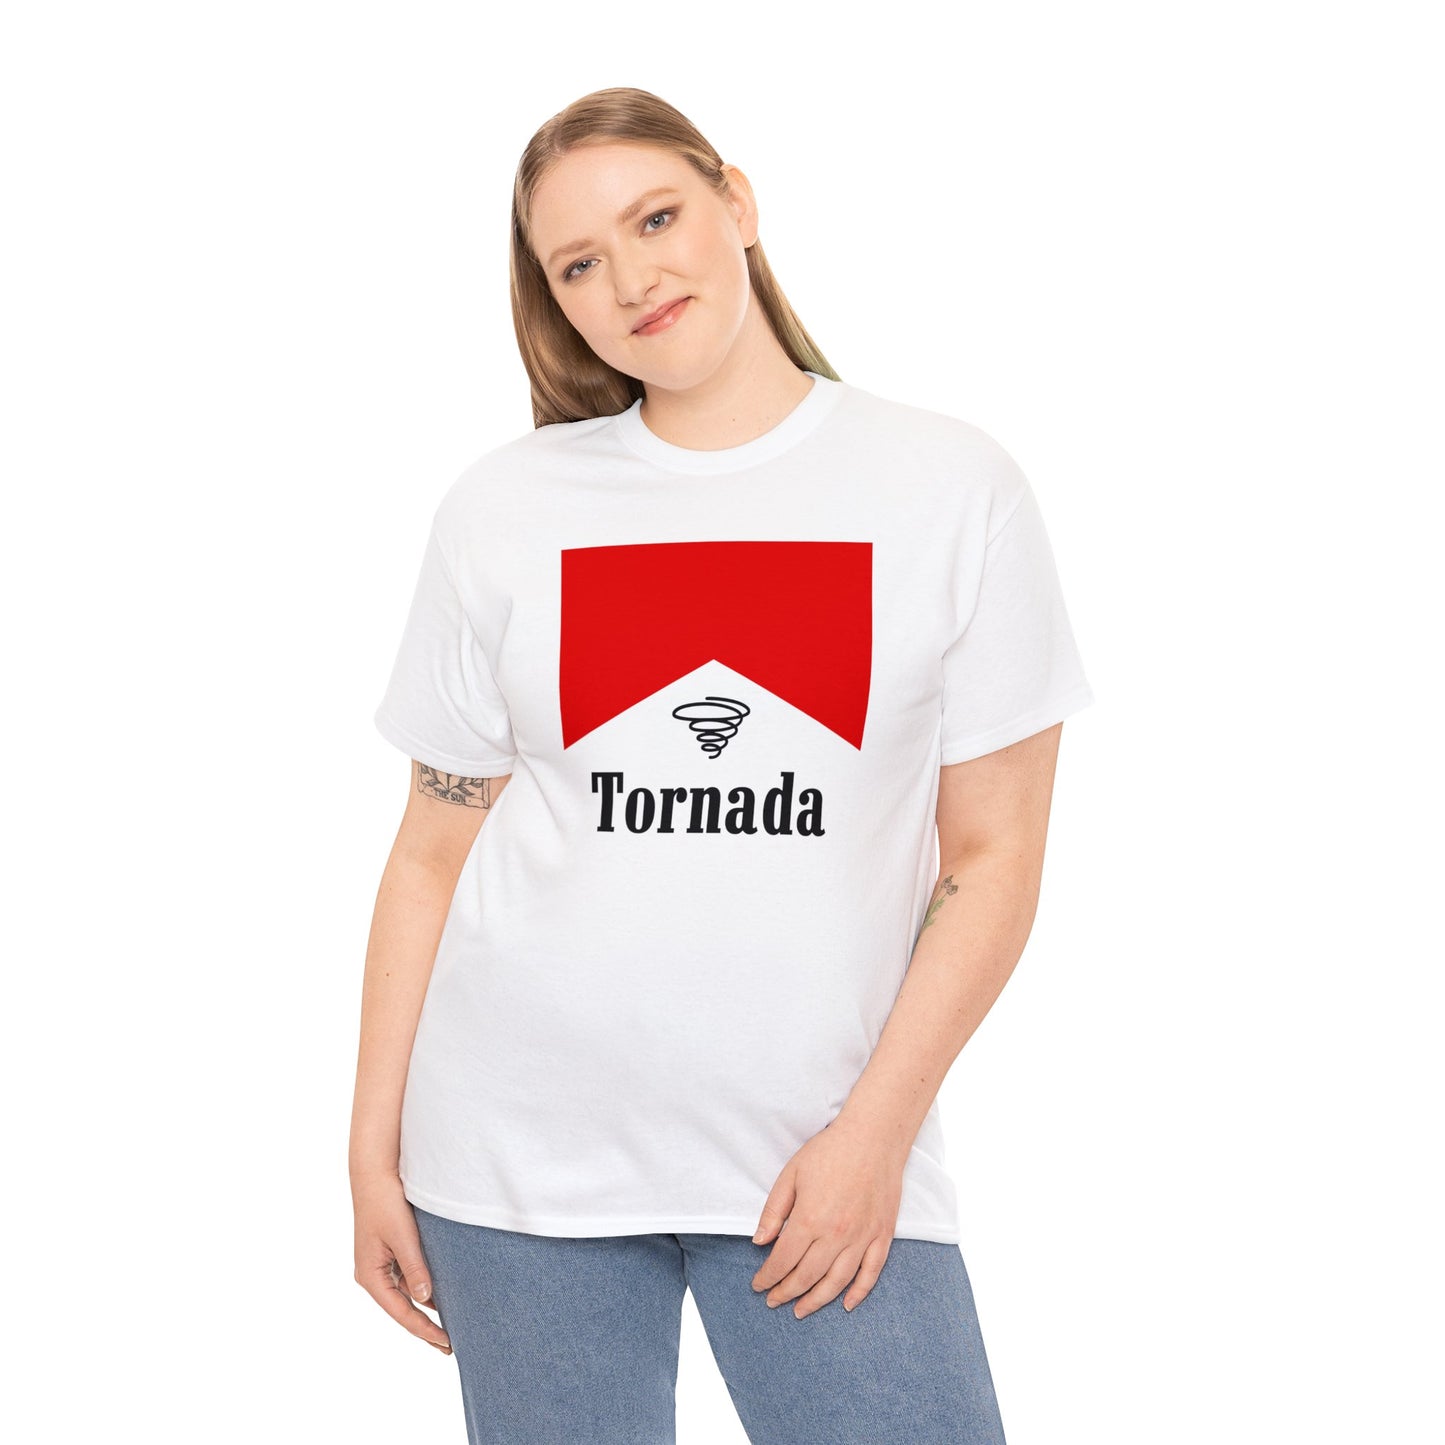 A Pack of Tornadas T Shirt